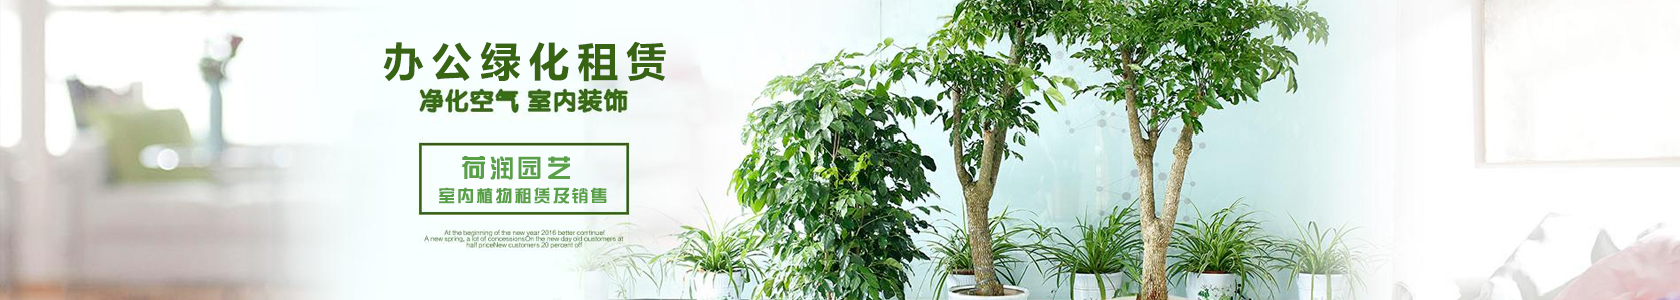 盆景植物    高度20-60厘米